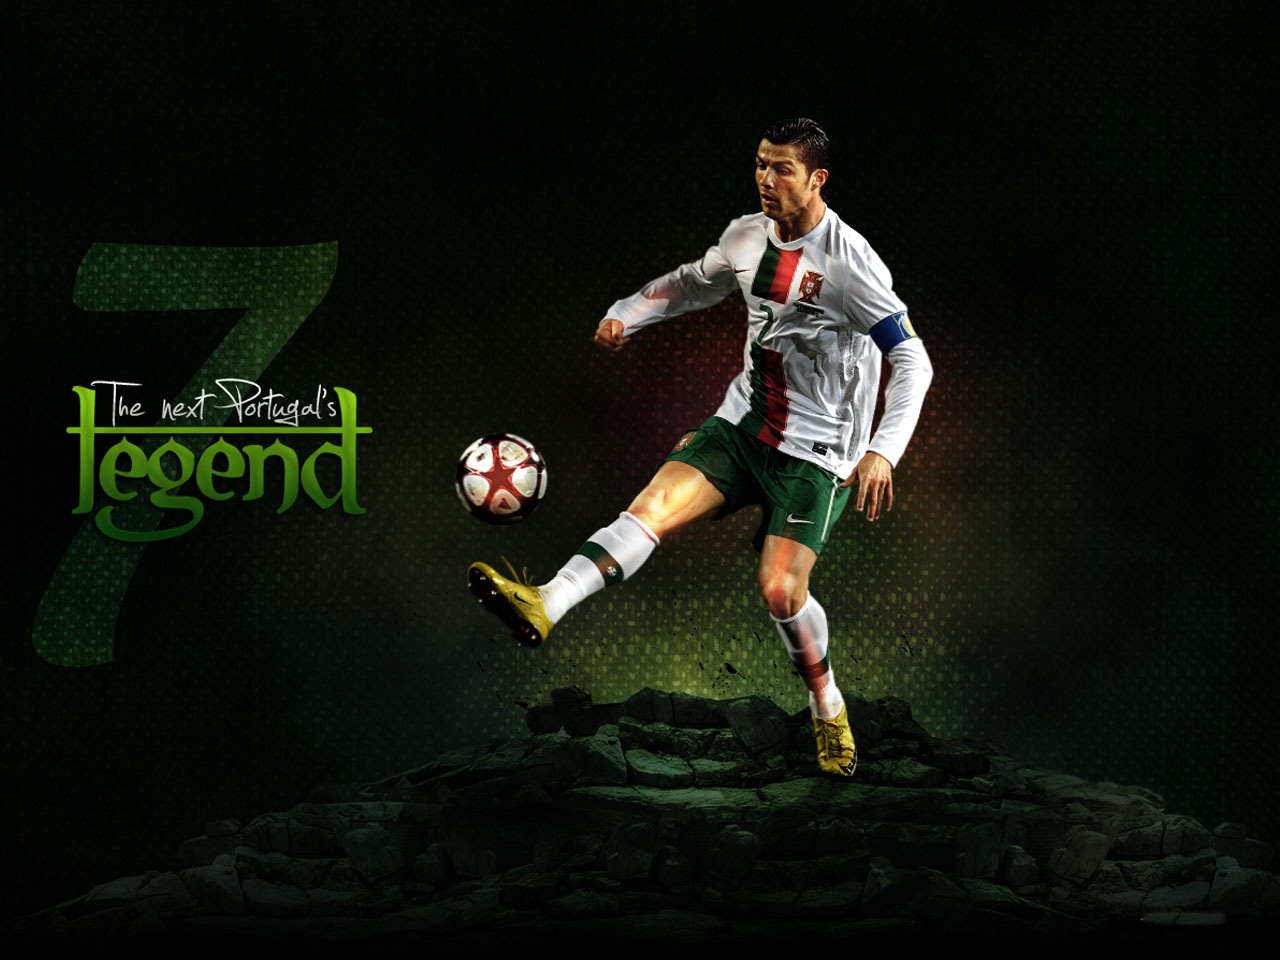 Cristiano Ronaldo Hd Wallpapers - Cristiano Ronaldo Wallpapers 2011 - HD Wallpaper 